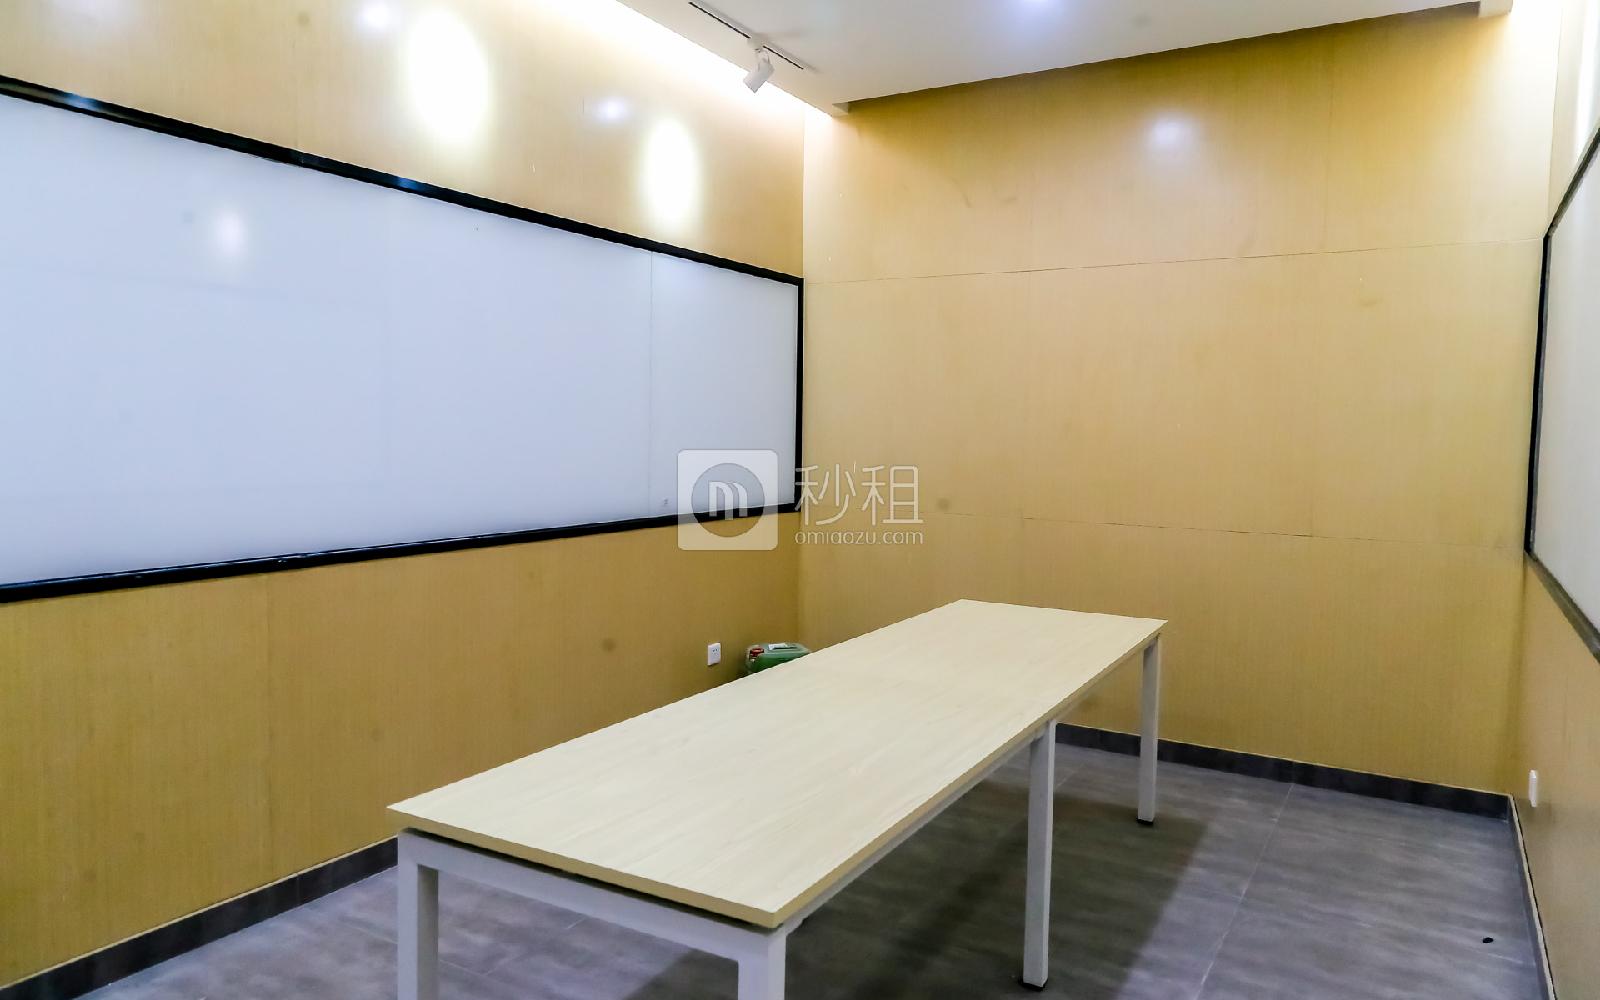 硅谷大院写字楼出租10平米精装办公室1480元/间.月